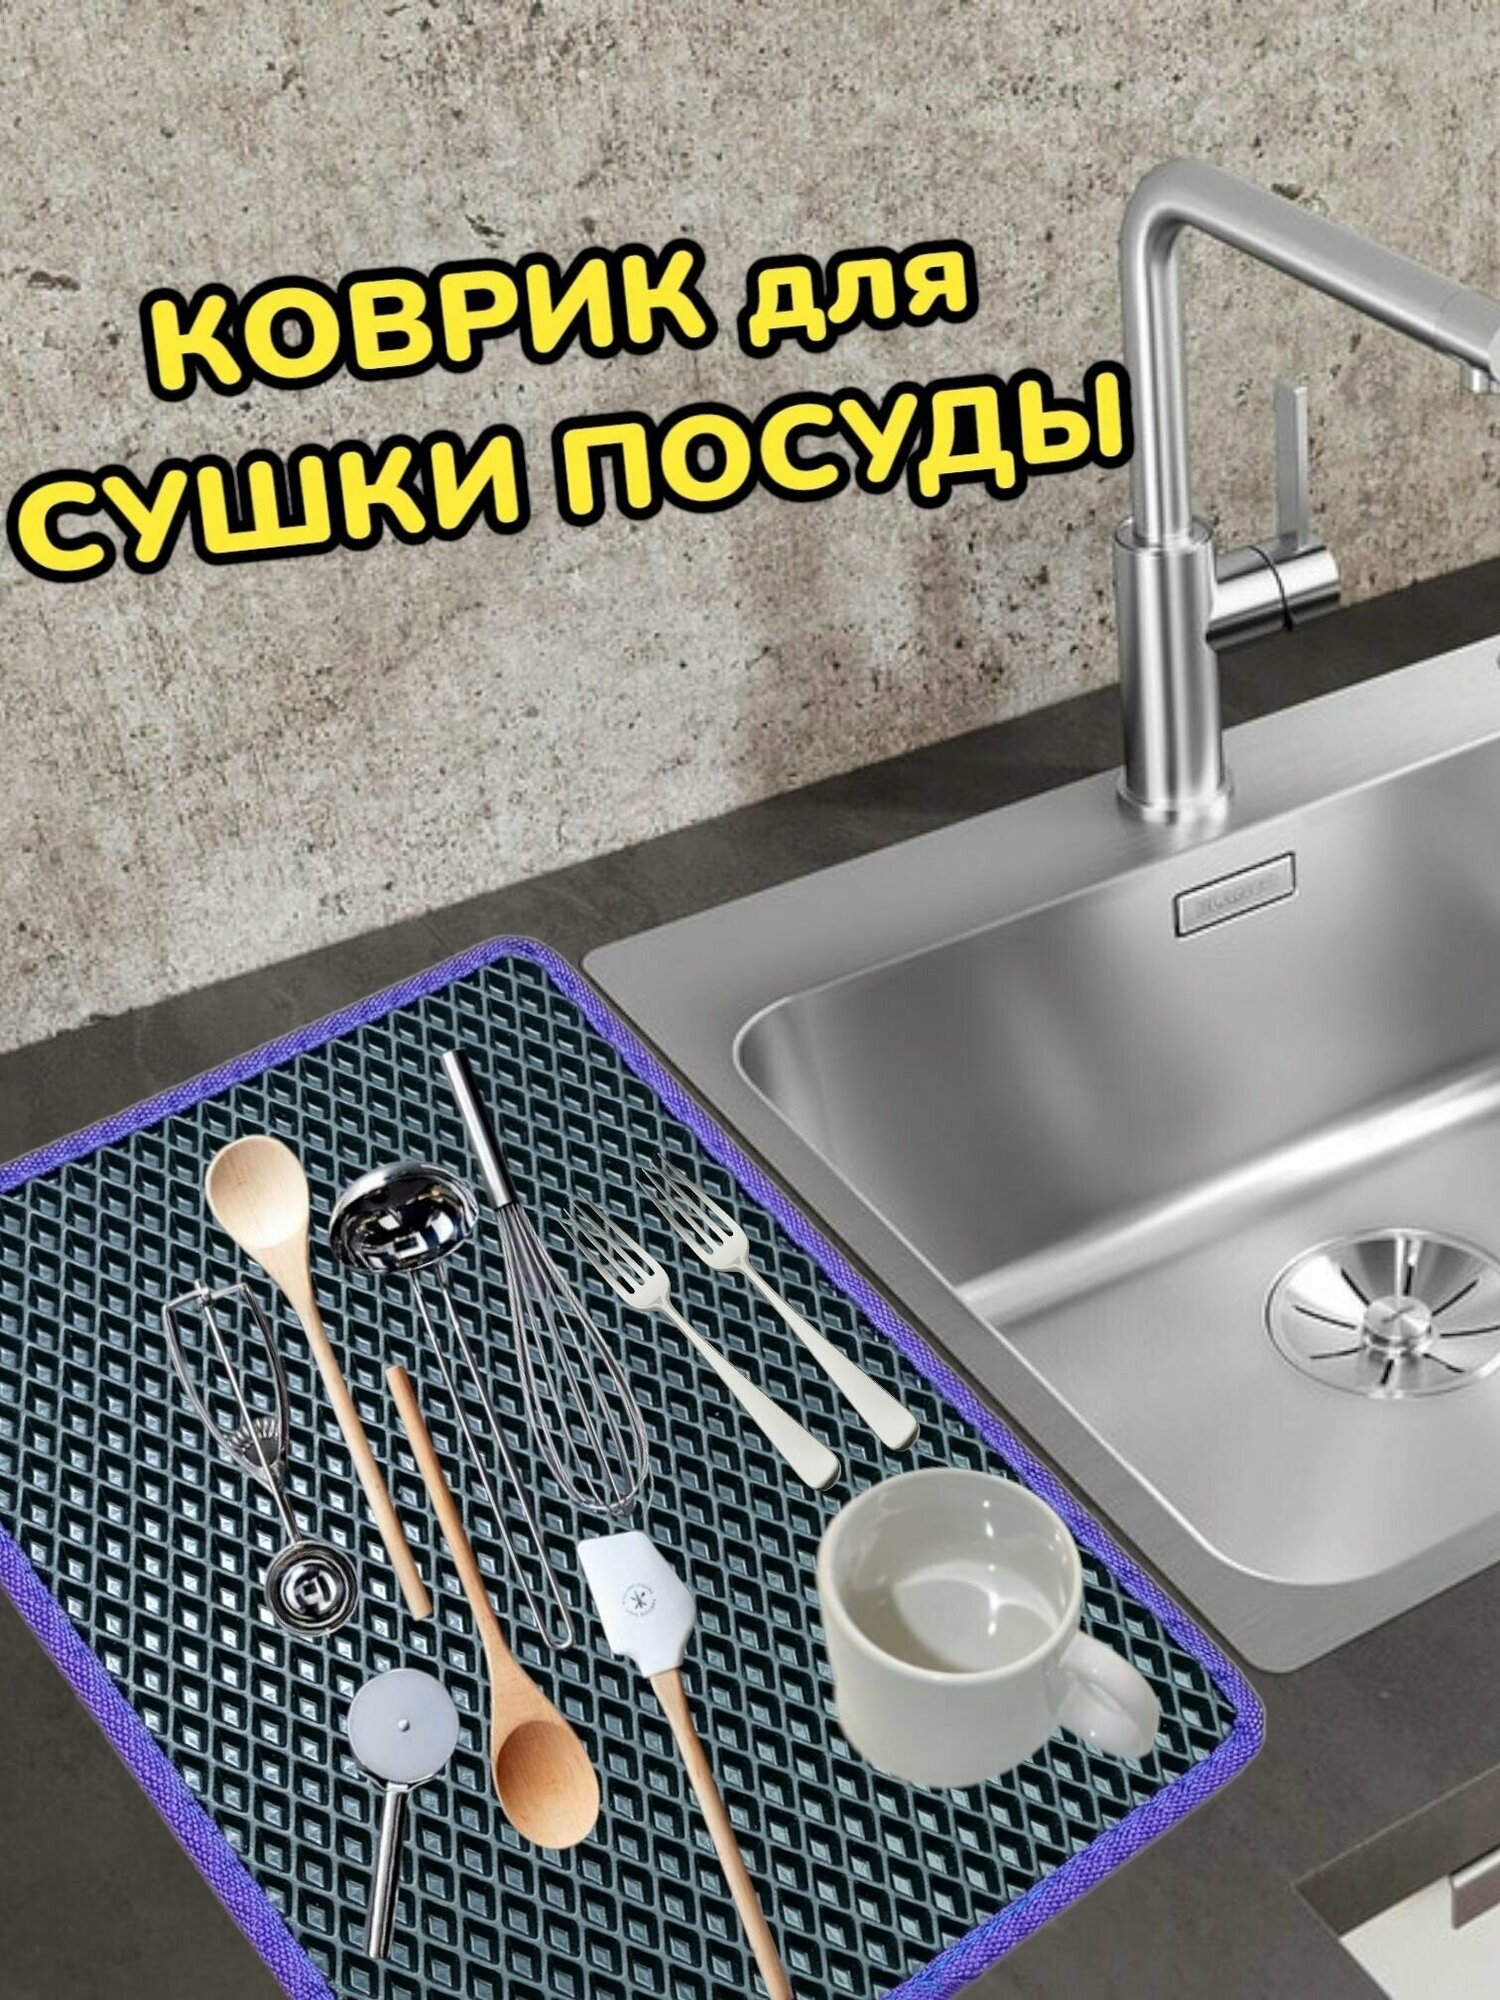 Коврик для сушки посуды / Поддон для сушилки посуды / 50 см х 40 см х 1 см / Черный с фиолетовым кантом